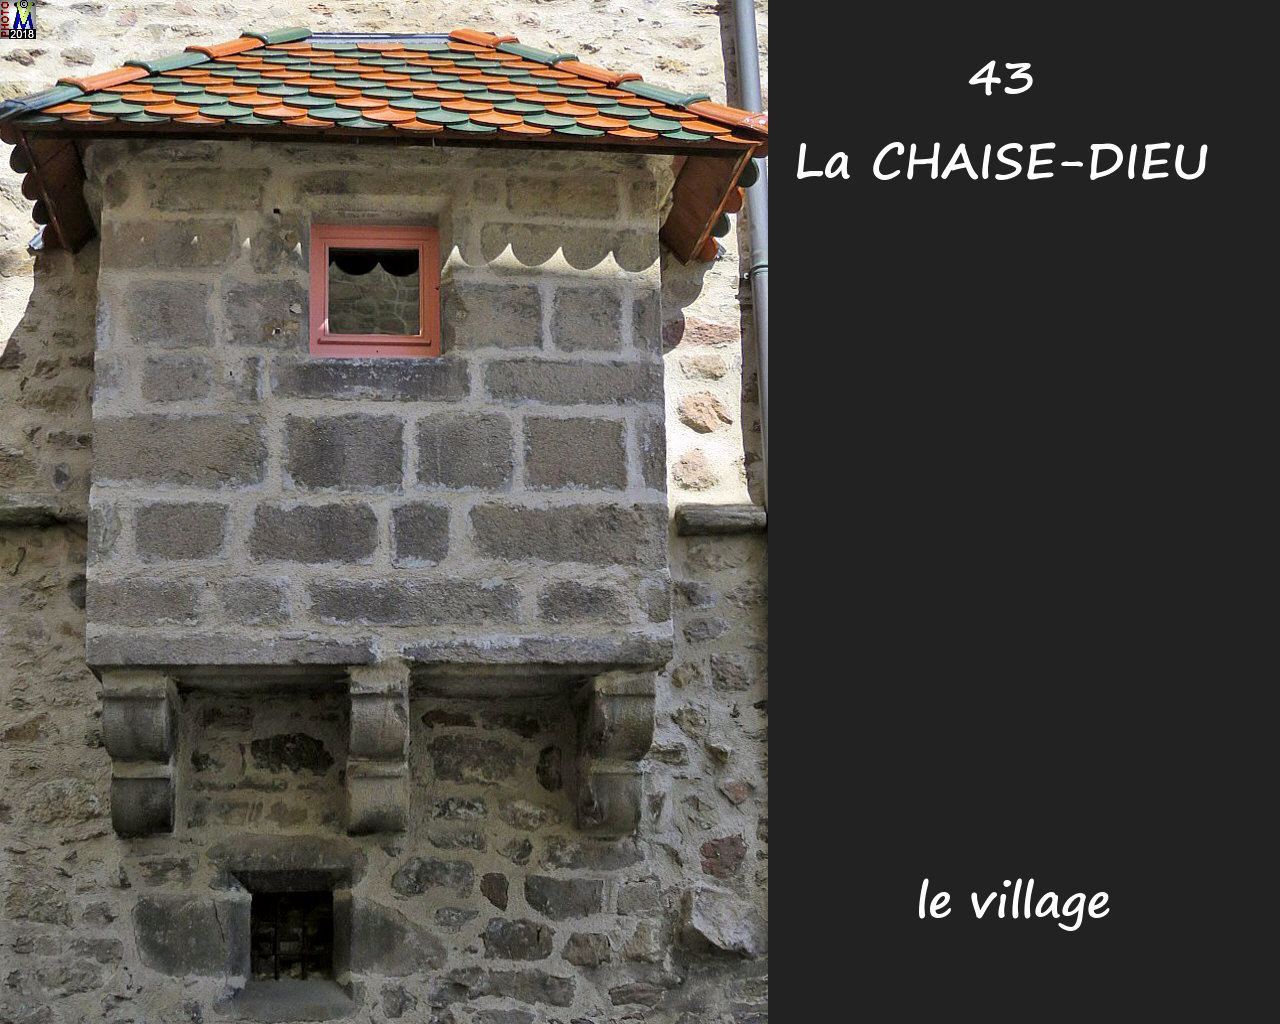 43CHAISE-DIEU_village_154.jpg